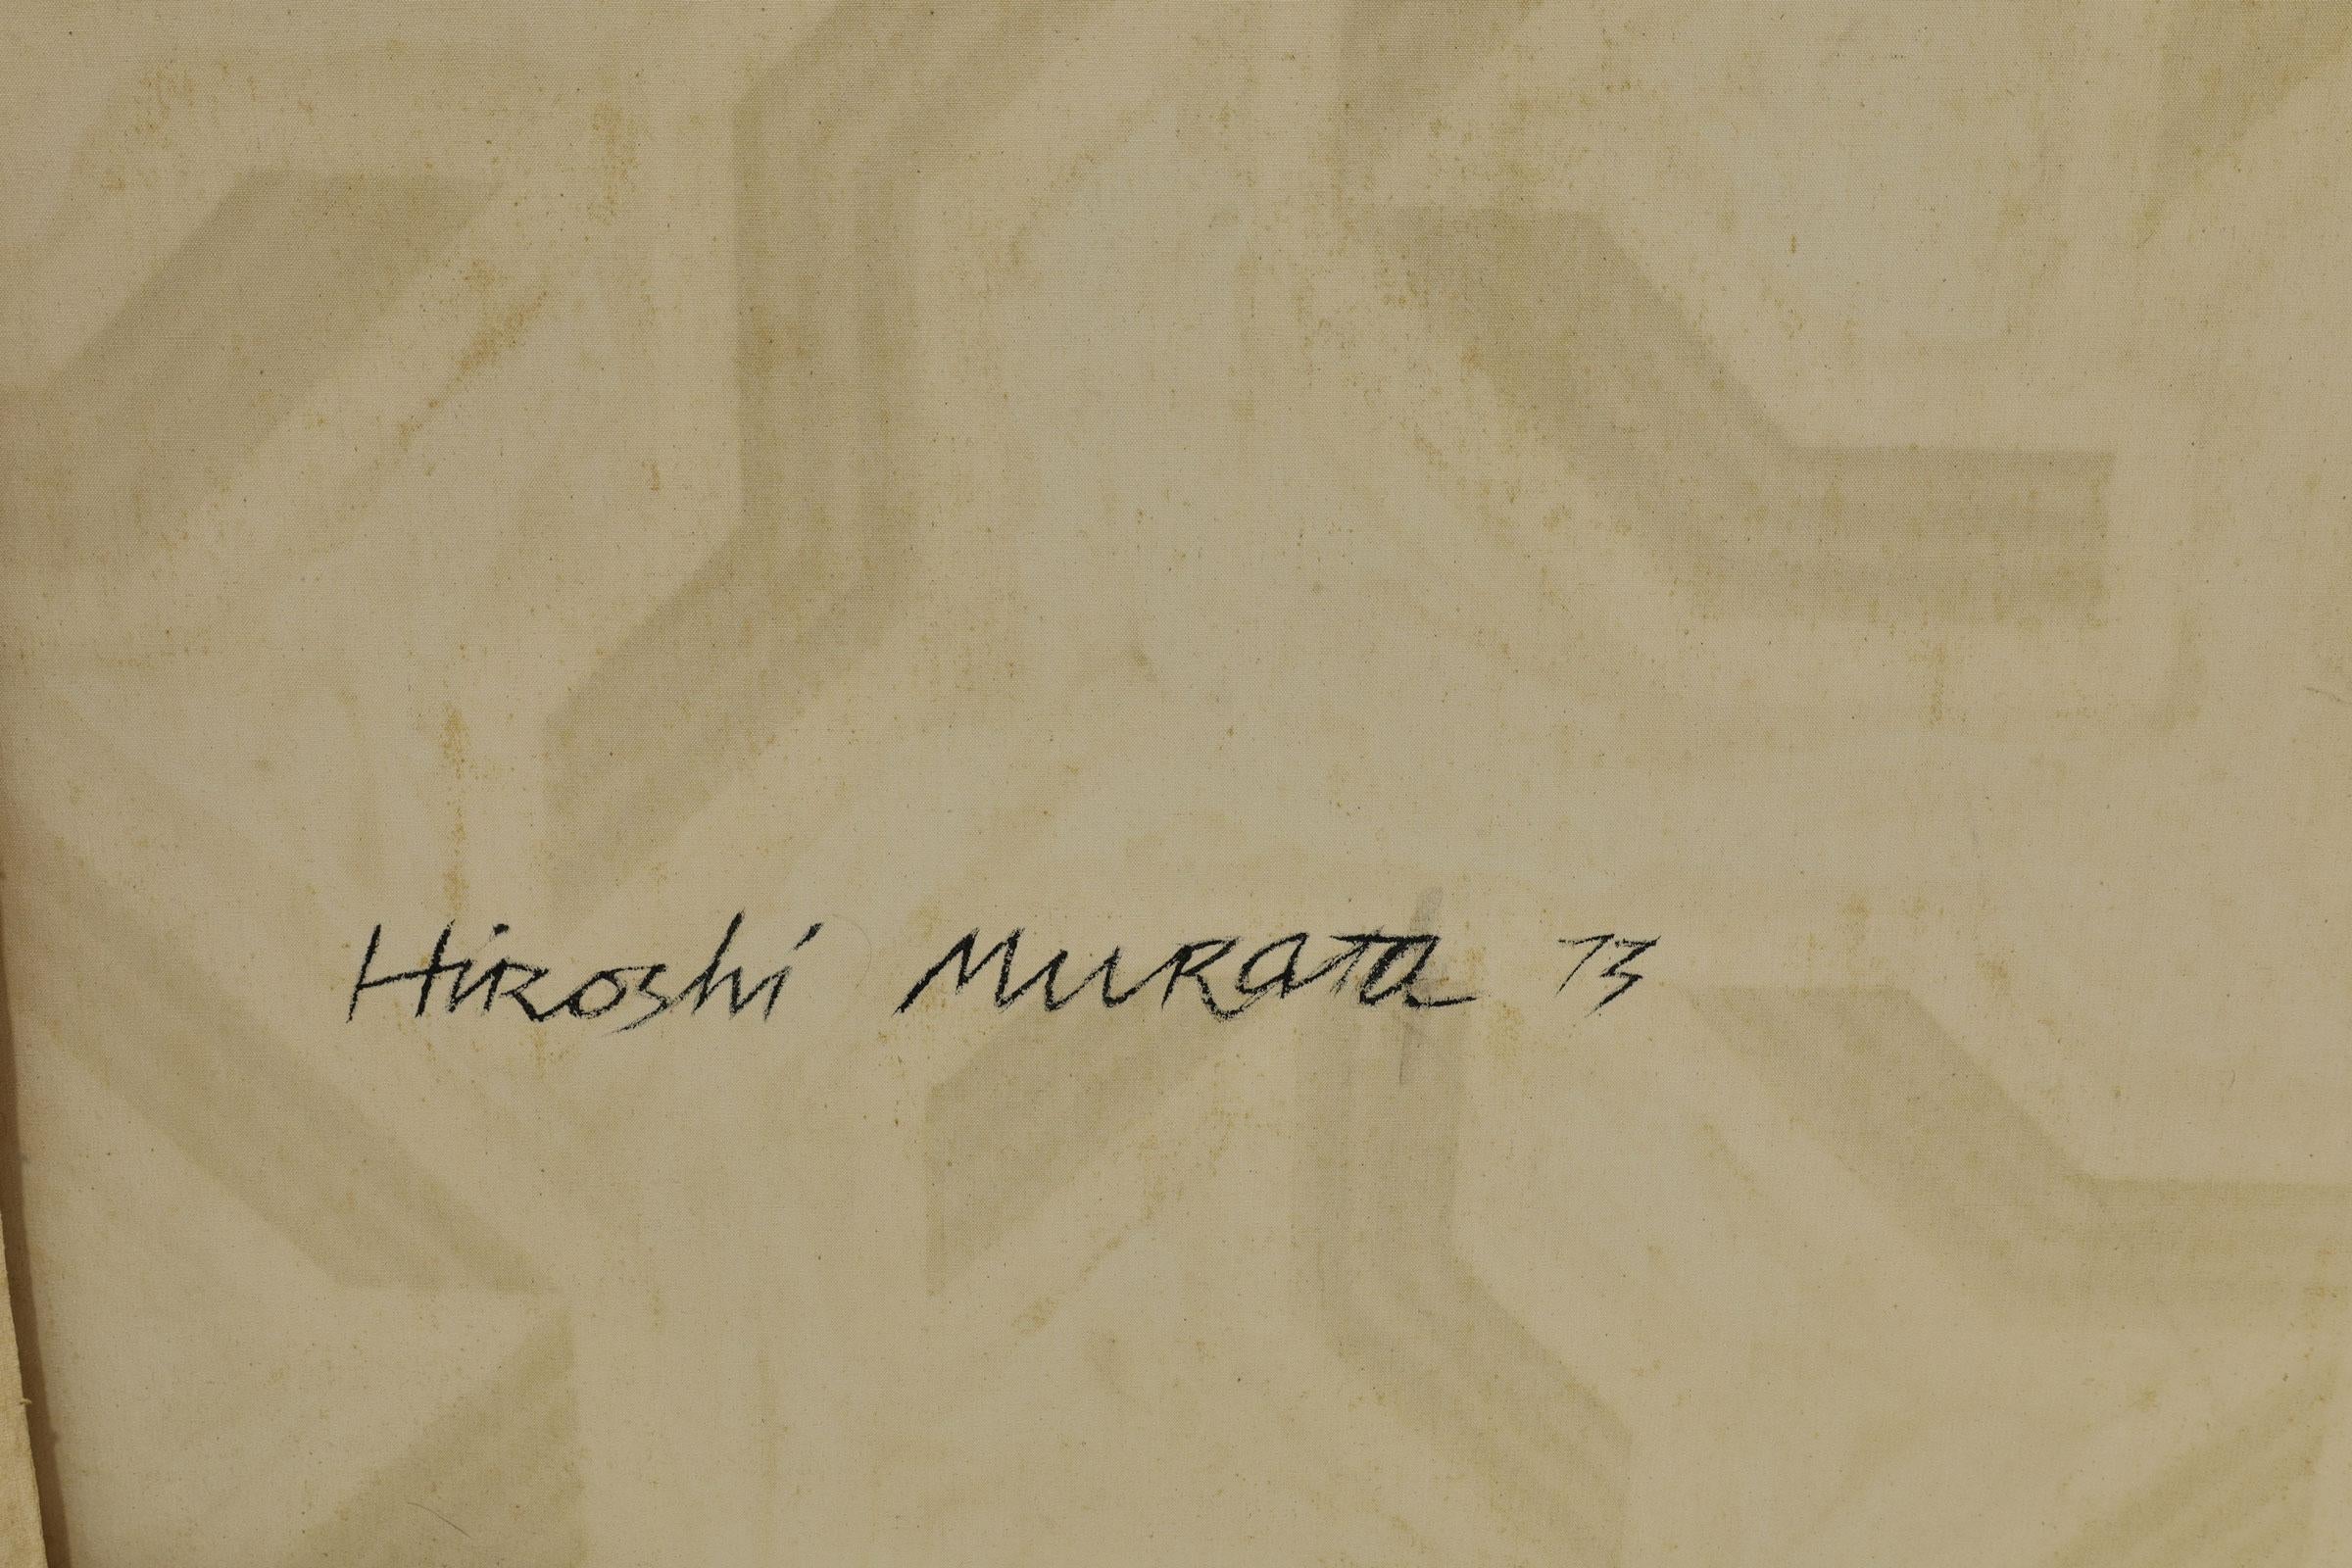 Hiroshi Murata, Acrylic on Canvas, dtd. 1973, 50.25